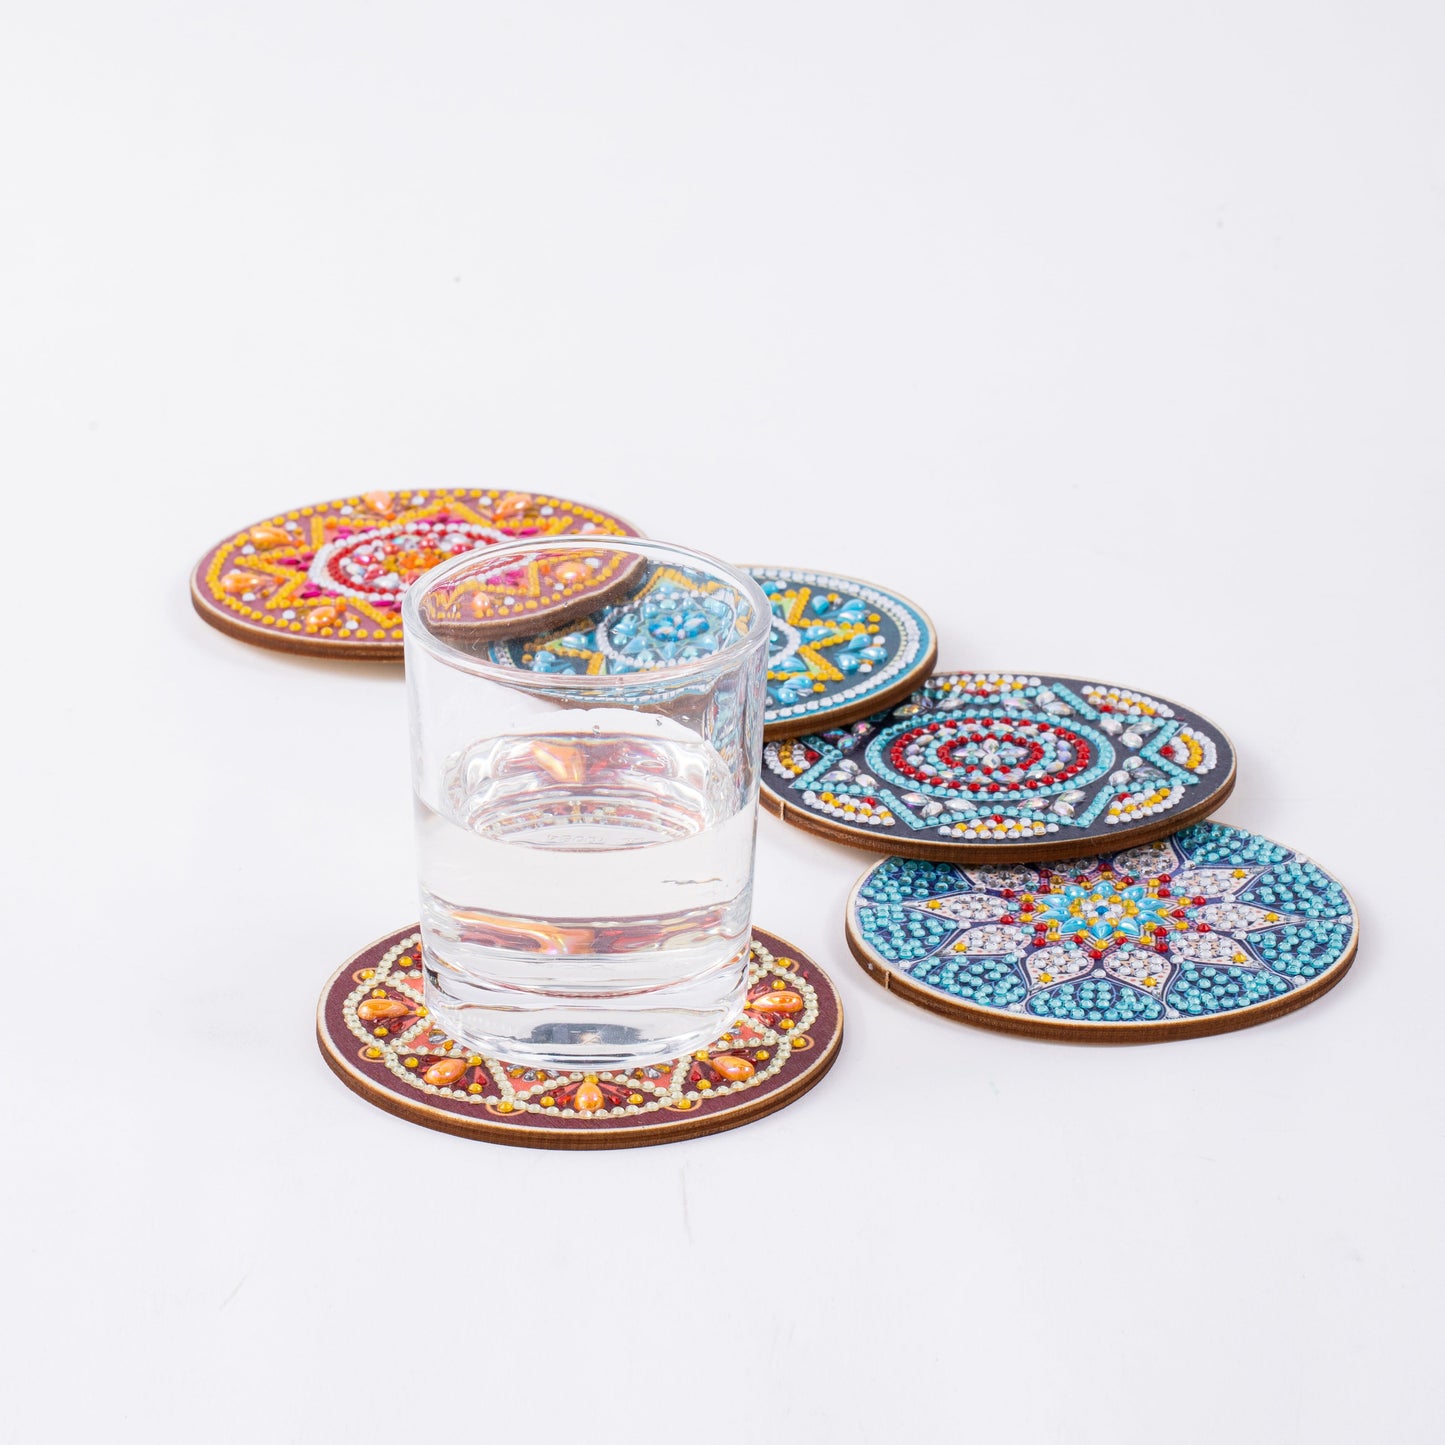 DIY Mandala A Diamond Painting Coasters